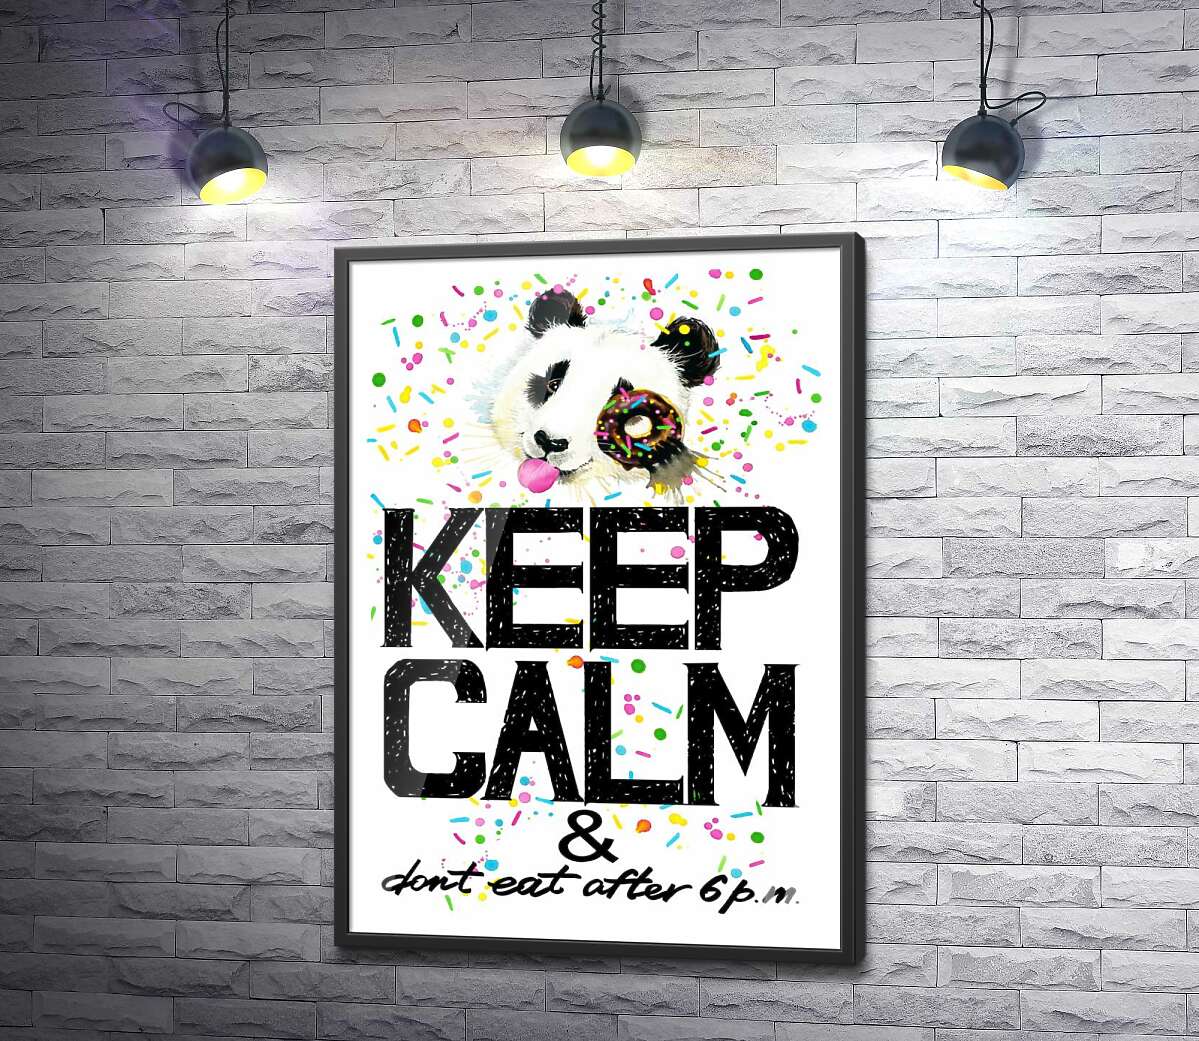 постер Панда з м'яким донатсом над написом "keep calm and don't eat after 6 p.m."